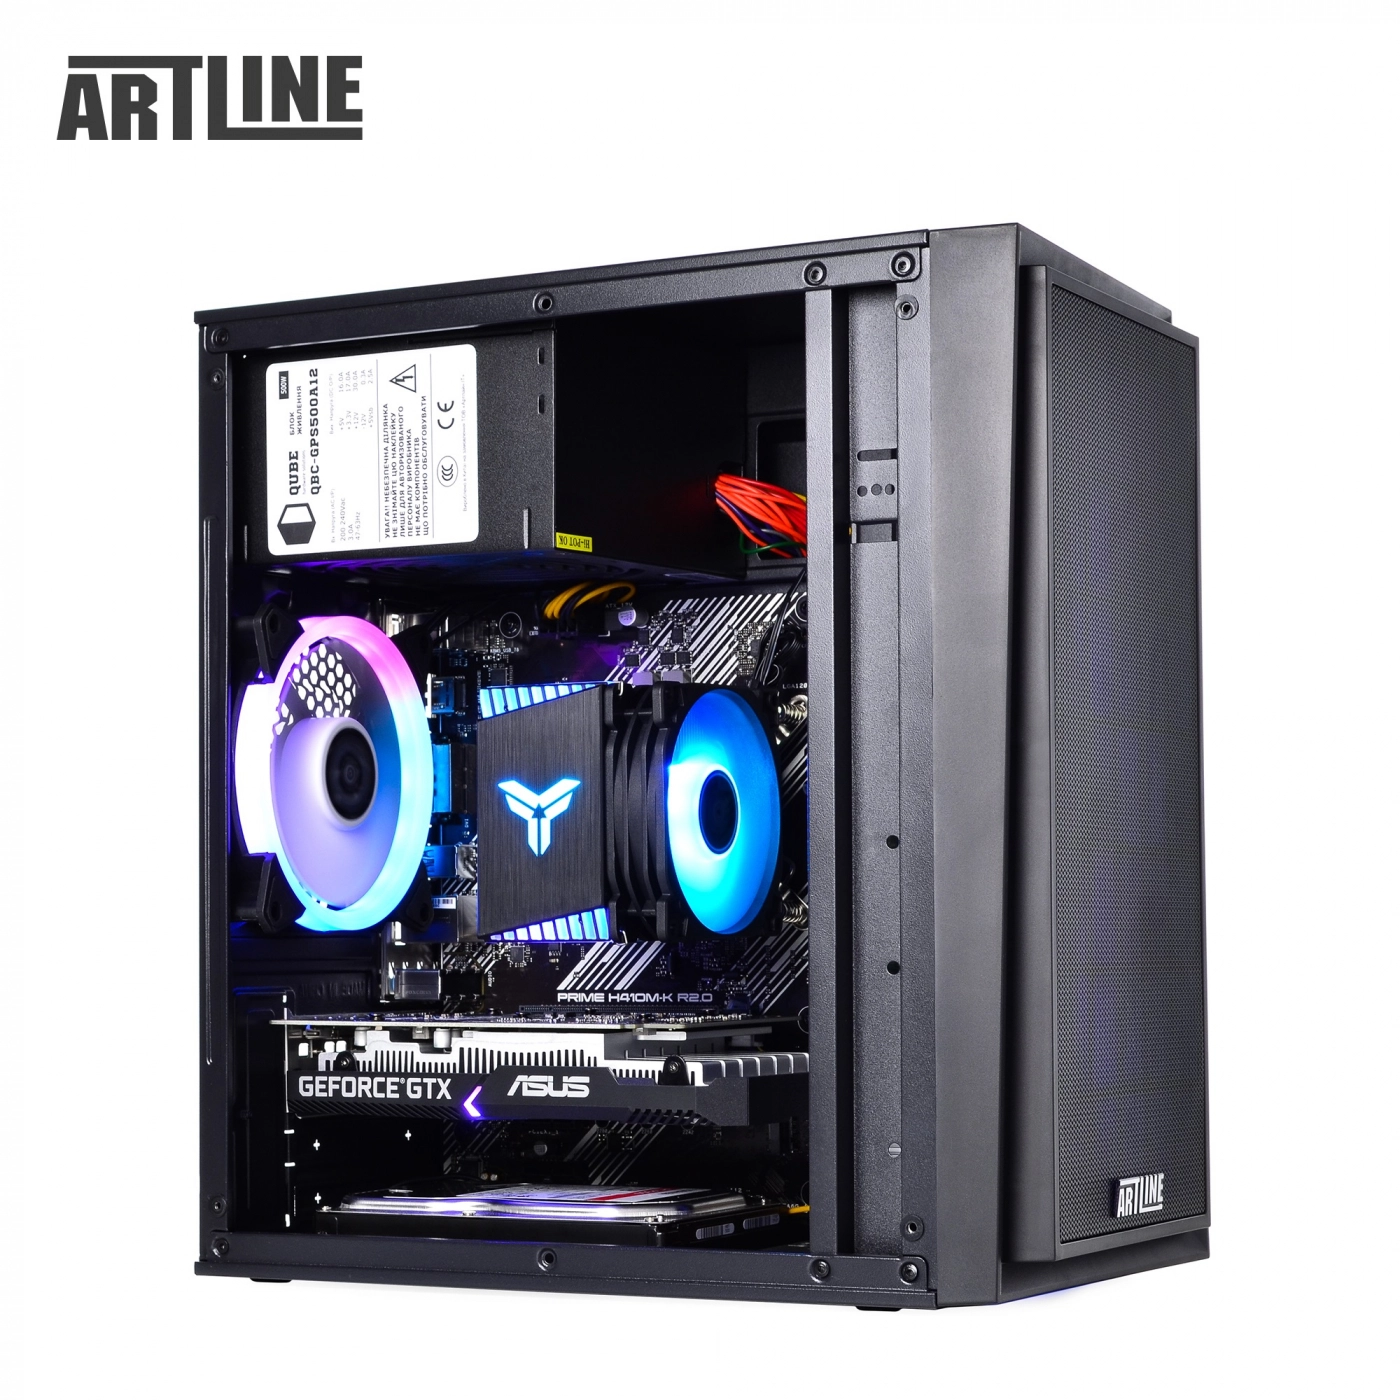 Купить Компьютер ARTLINE Gaming X42v02 - фото 13